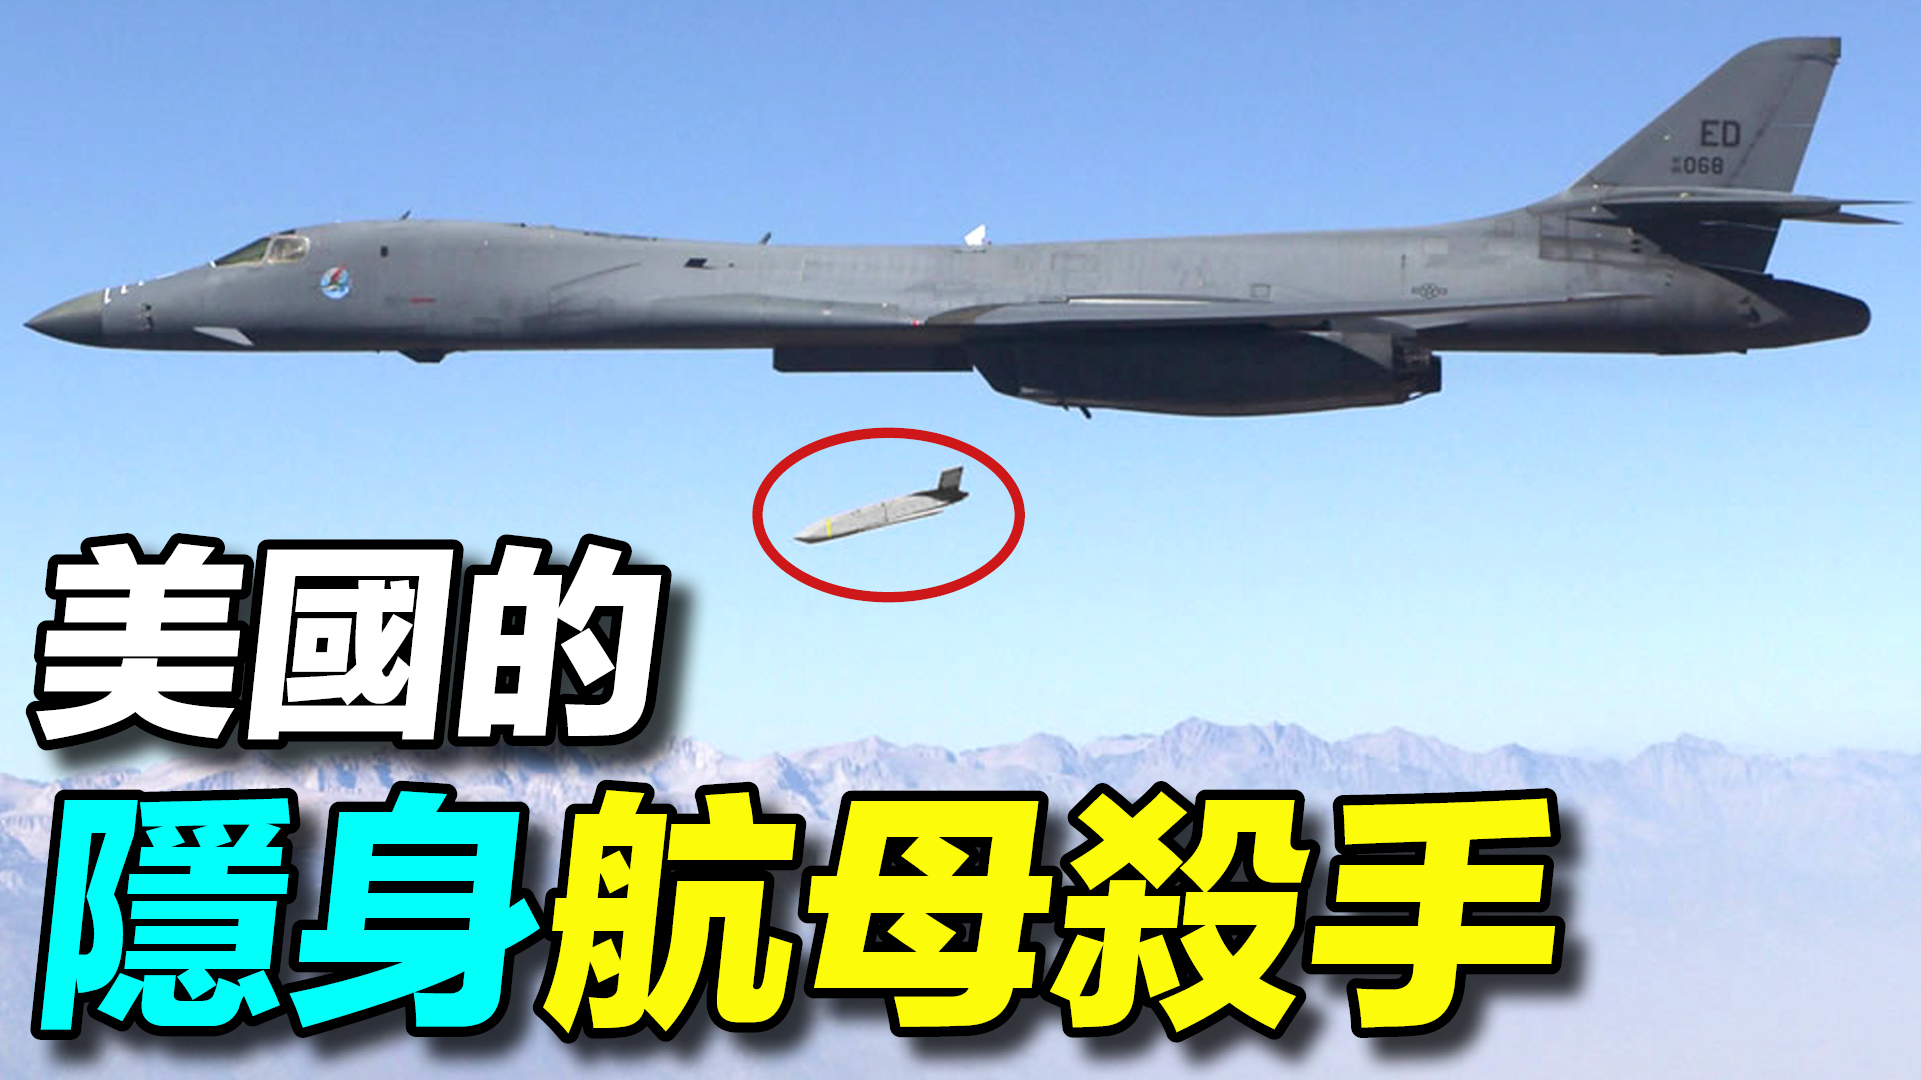 美國的隱身航母殺手AGM-158導彈；射程1900公里，從臺灣打到日本，一枚300萬美元！ | #探索時分